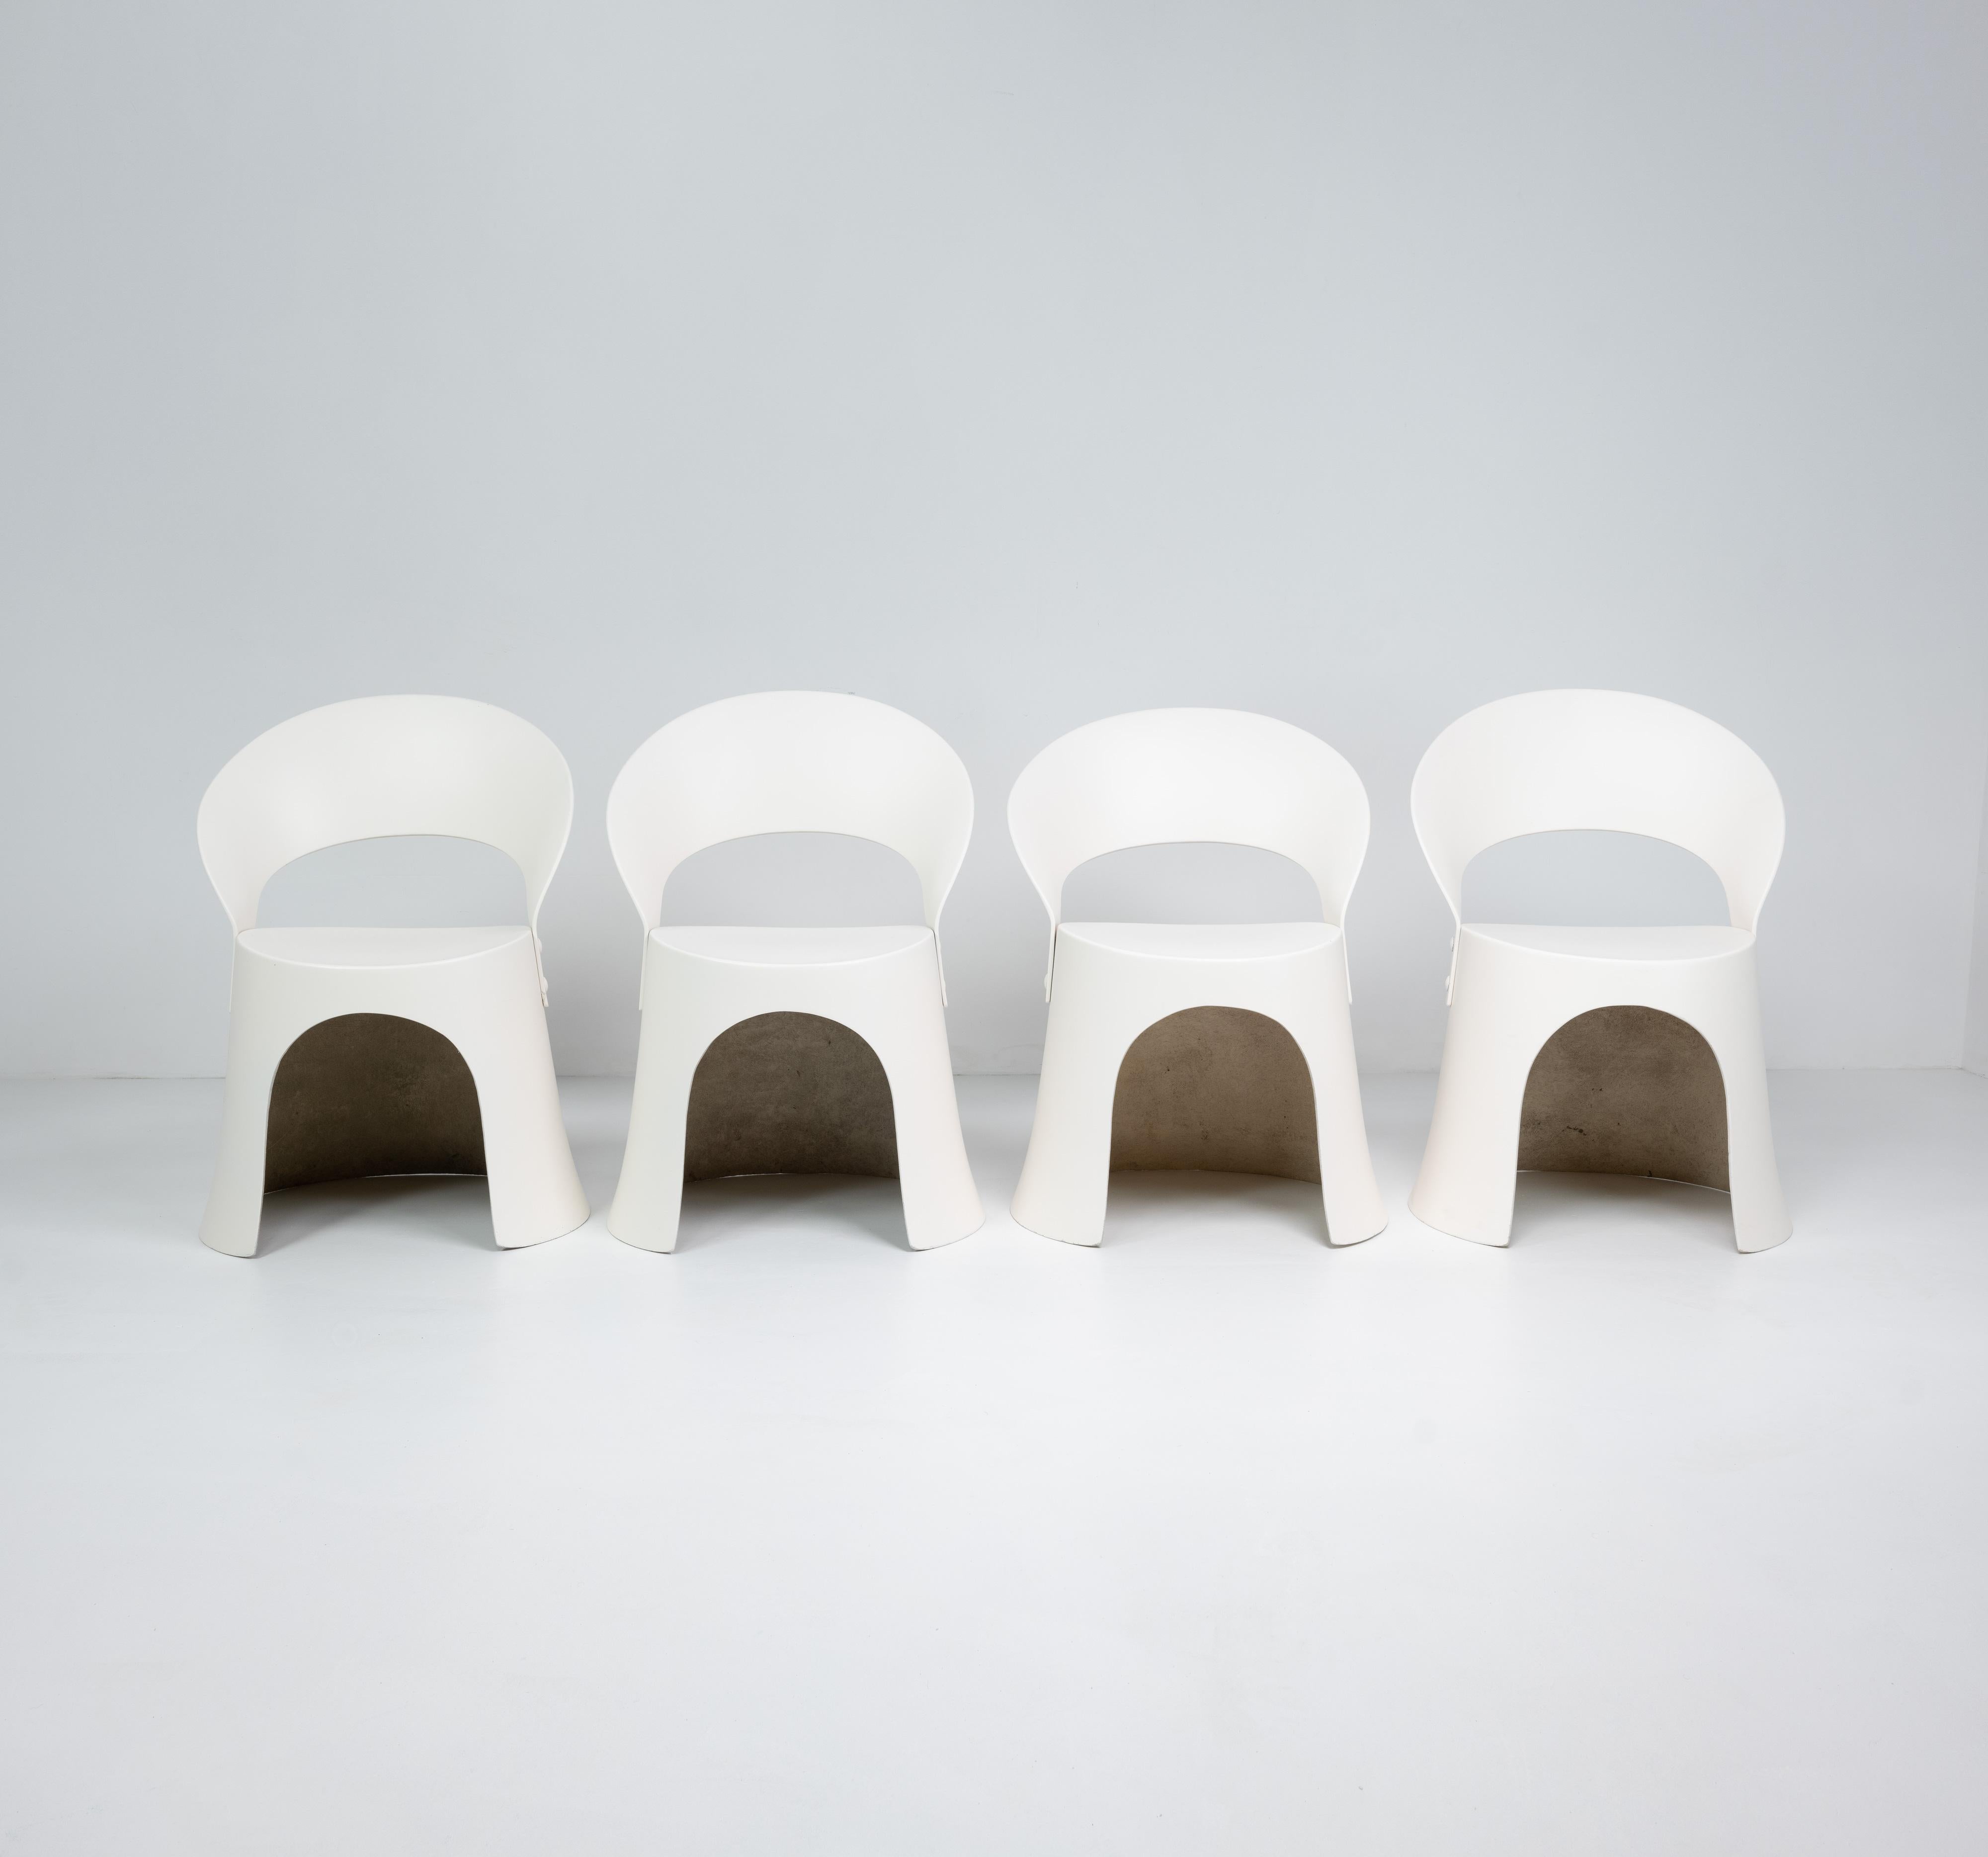 Un ensemble de quatre chaises rares en fibre de verre conçues par Nanna Ditzel et produites par OD Møbler / Domus Danica en 1969. 


Dimensions (cm, environ) : 
Hauteur : 78
Largeur : 55
Profondeur : 52
Hauteur du siège : 45
